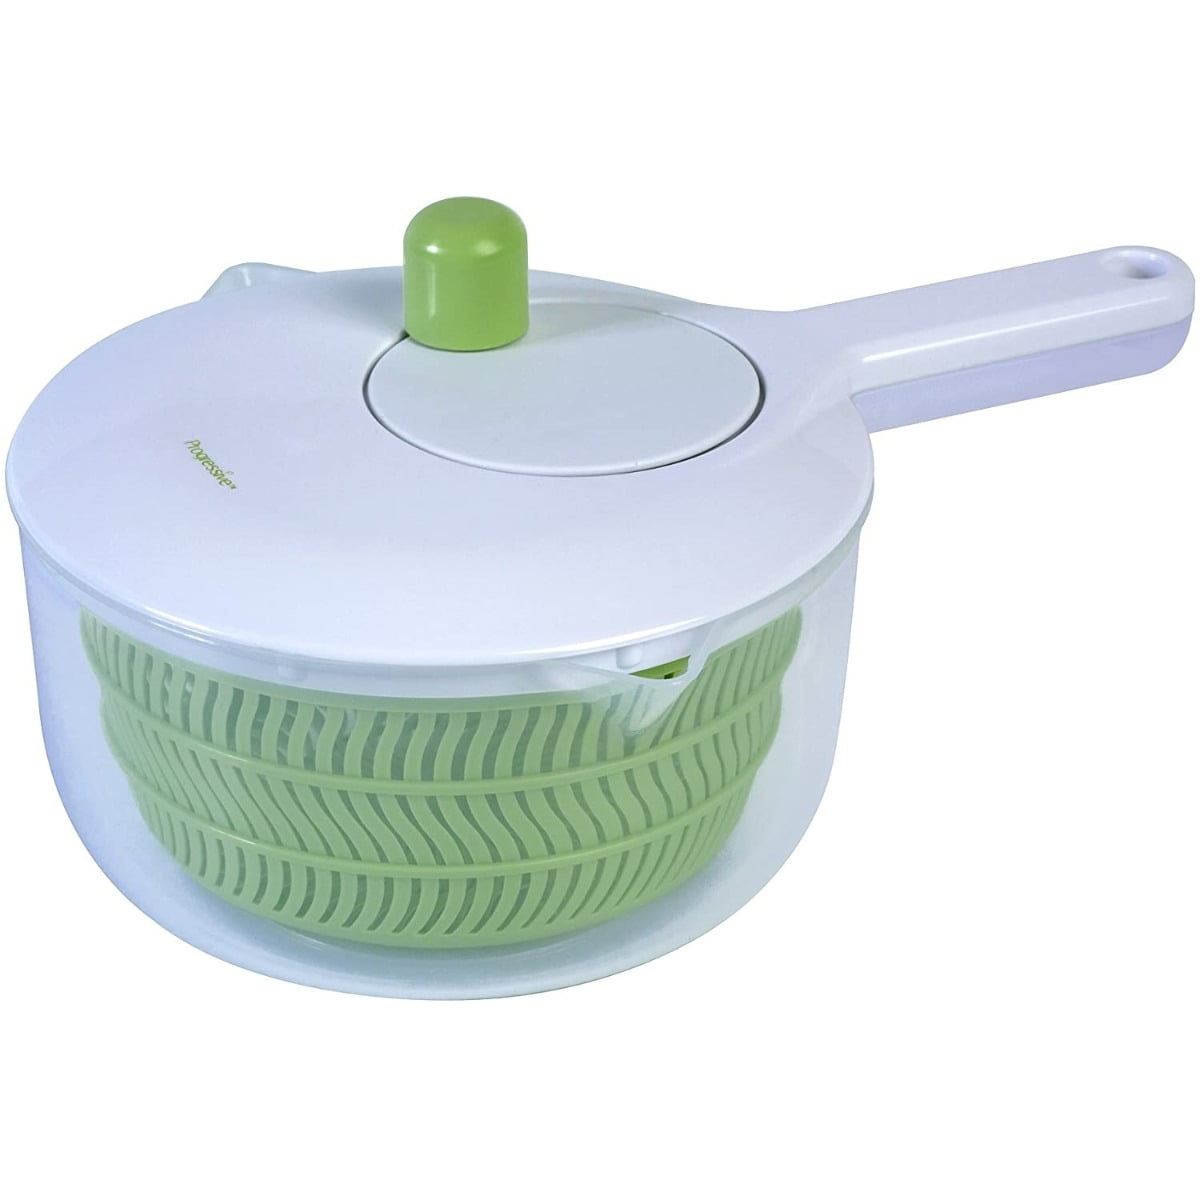 5L Lettuce Spinner Vegetable Washer Dryer with Large Salad Bowl and Plastic Colander Fuoliystep Large Salad Spinner BPA Free Fruit Veggie Wash & Salad Making